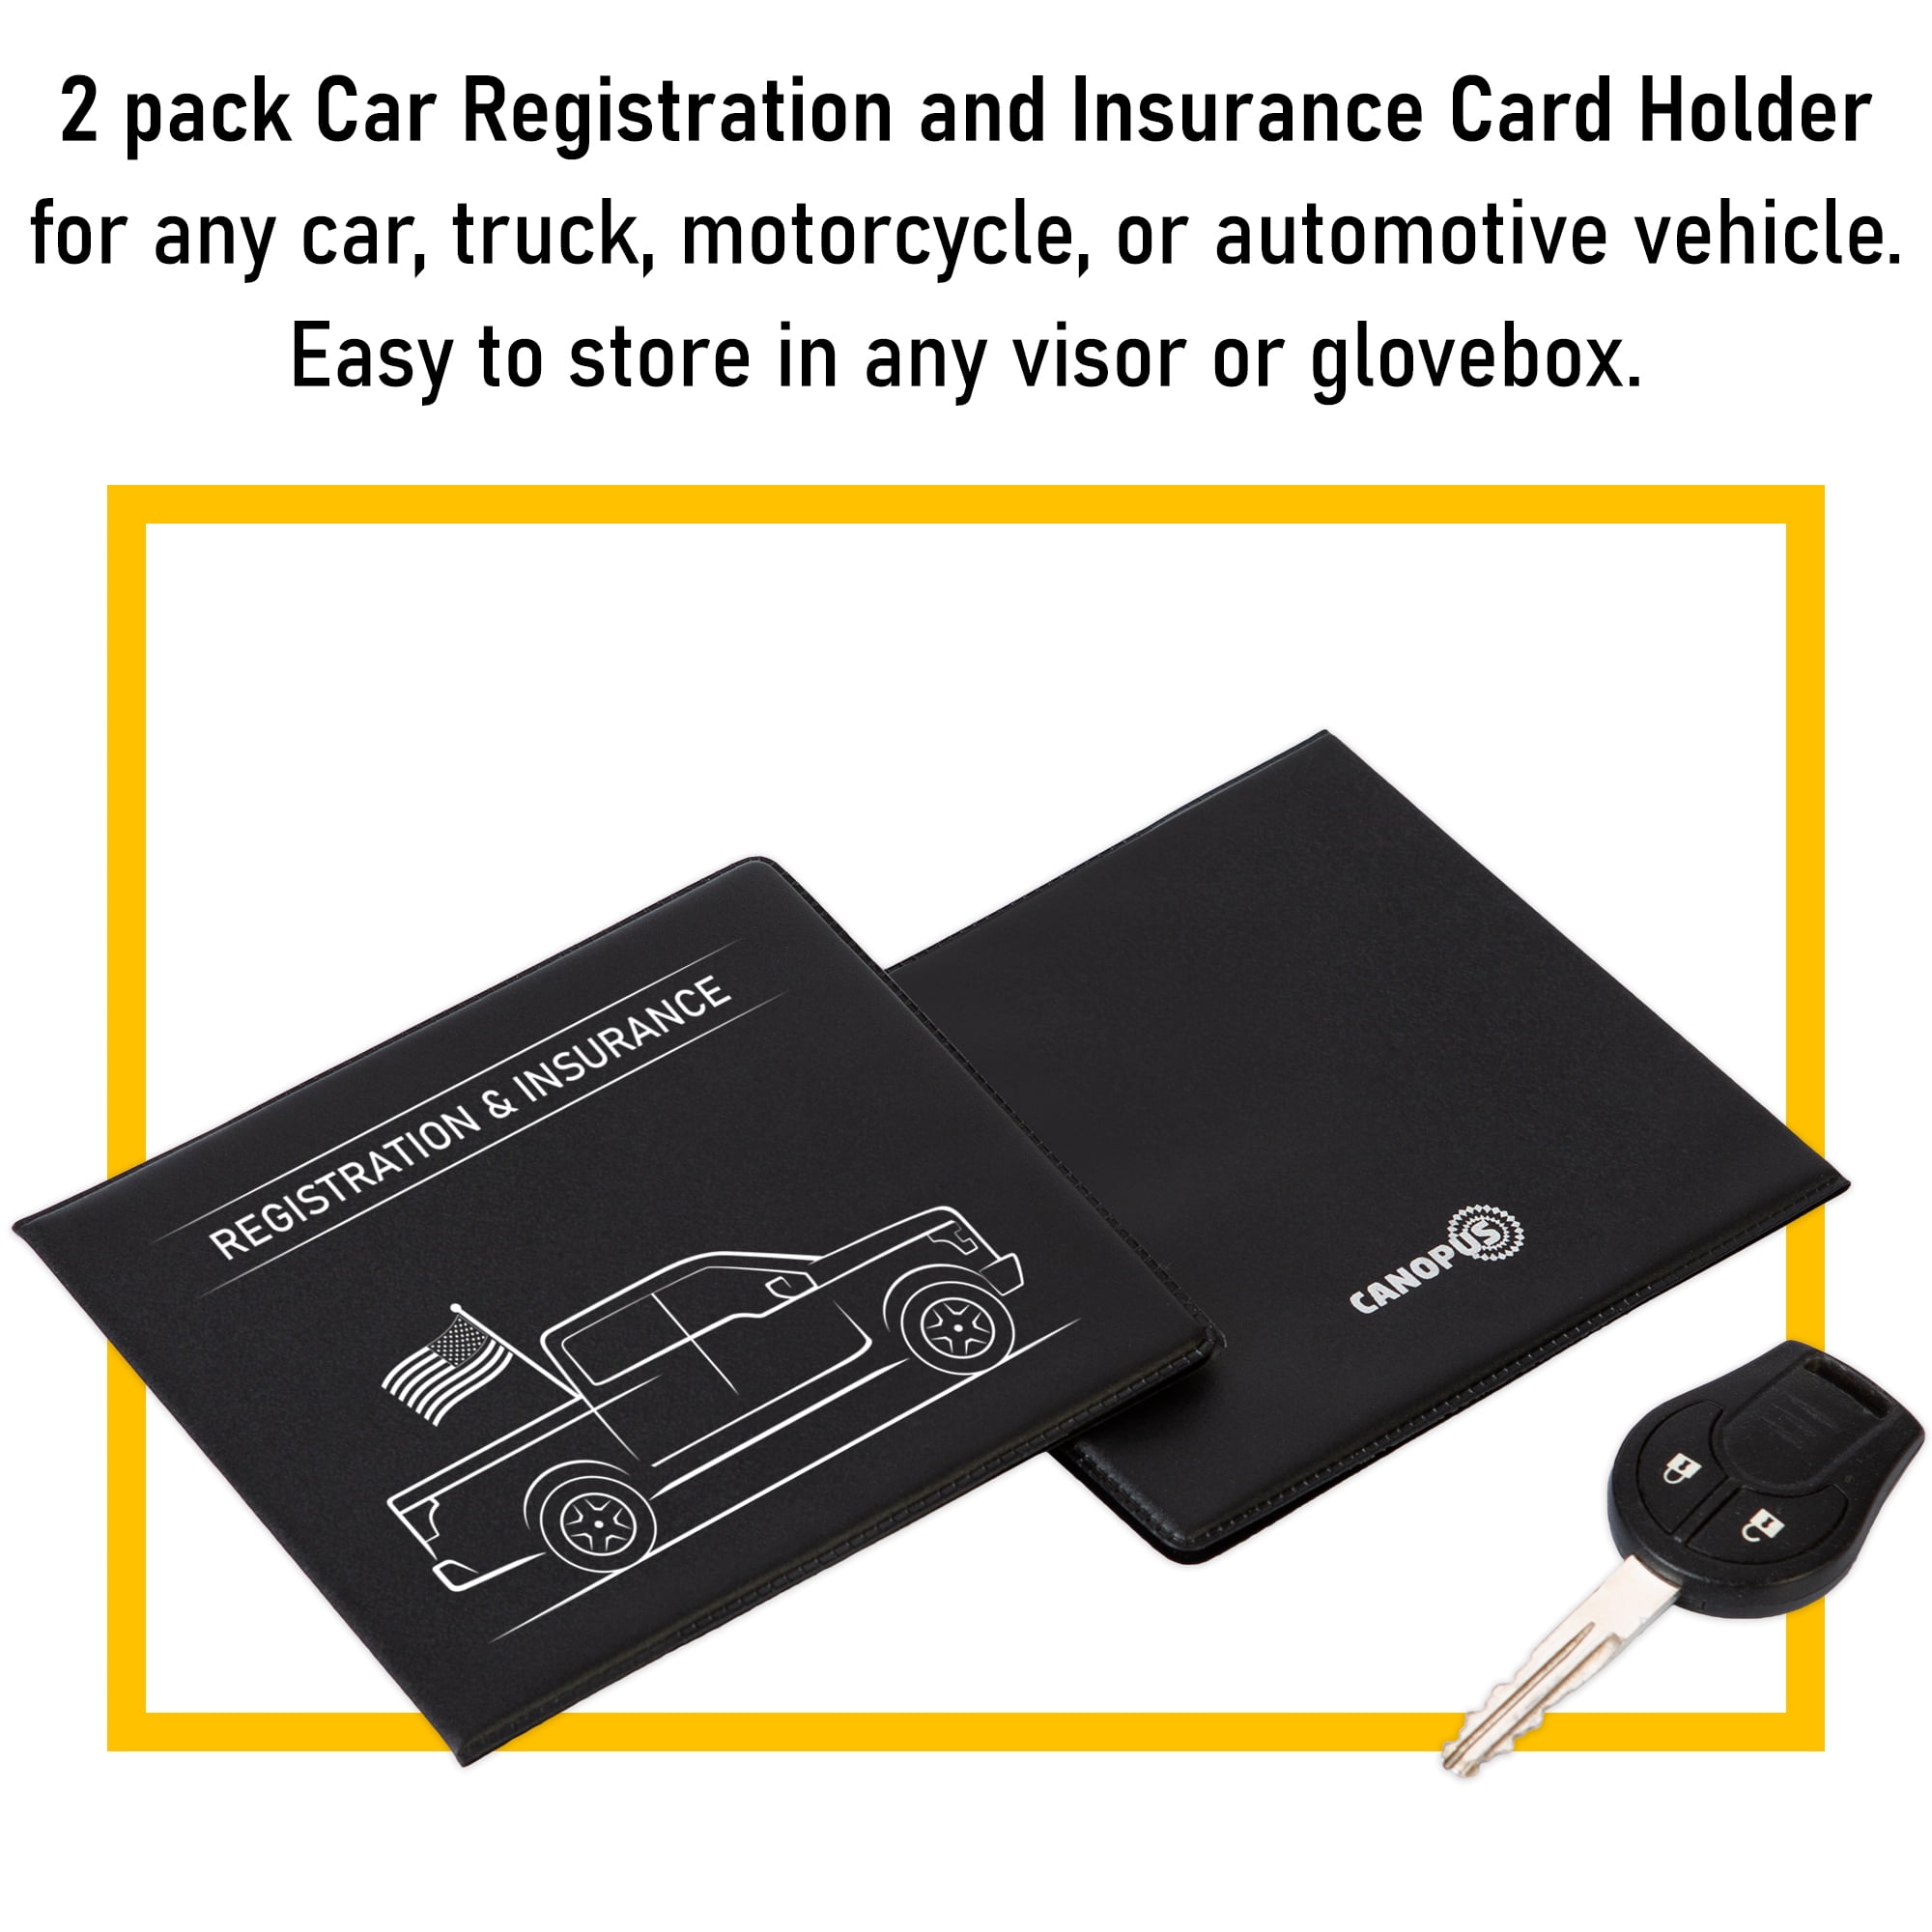  CoBak Car Registration and Insurance Holder - Vehicle